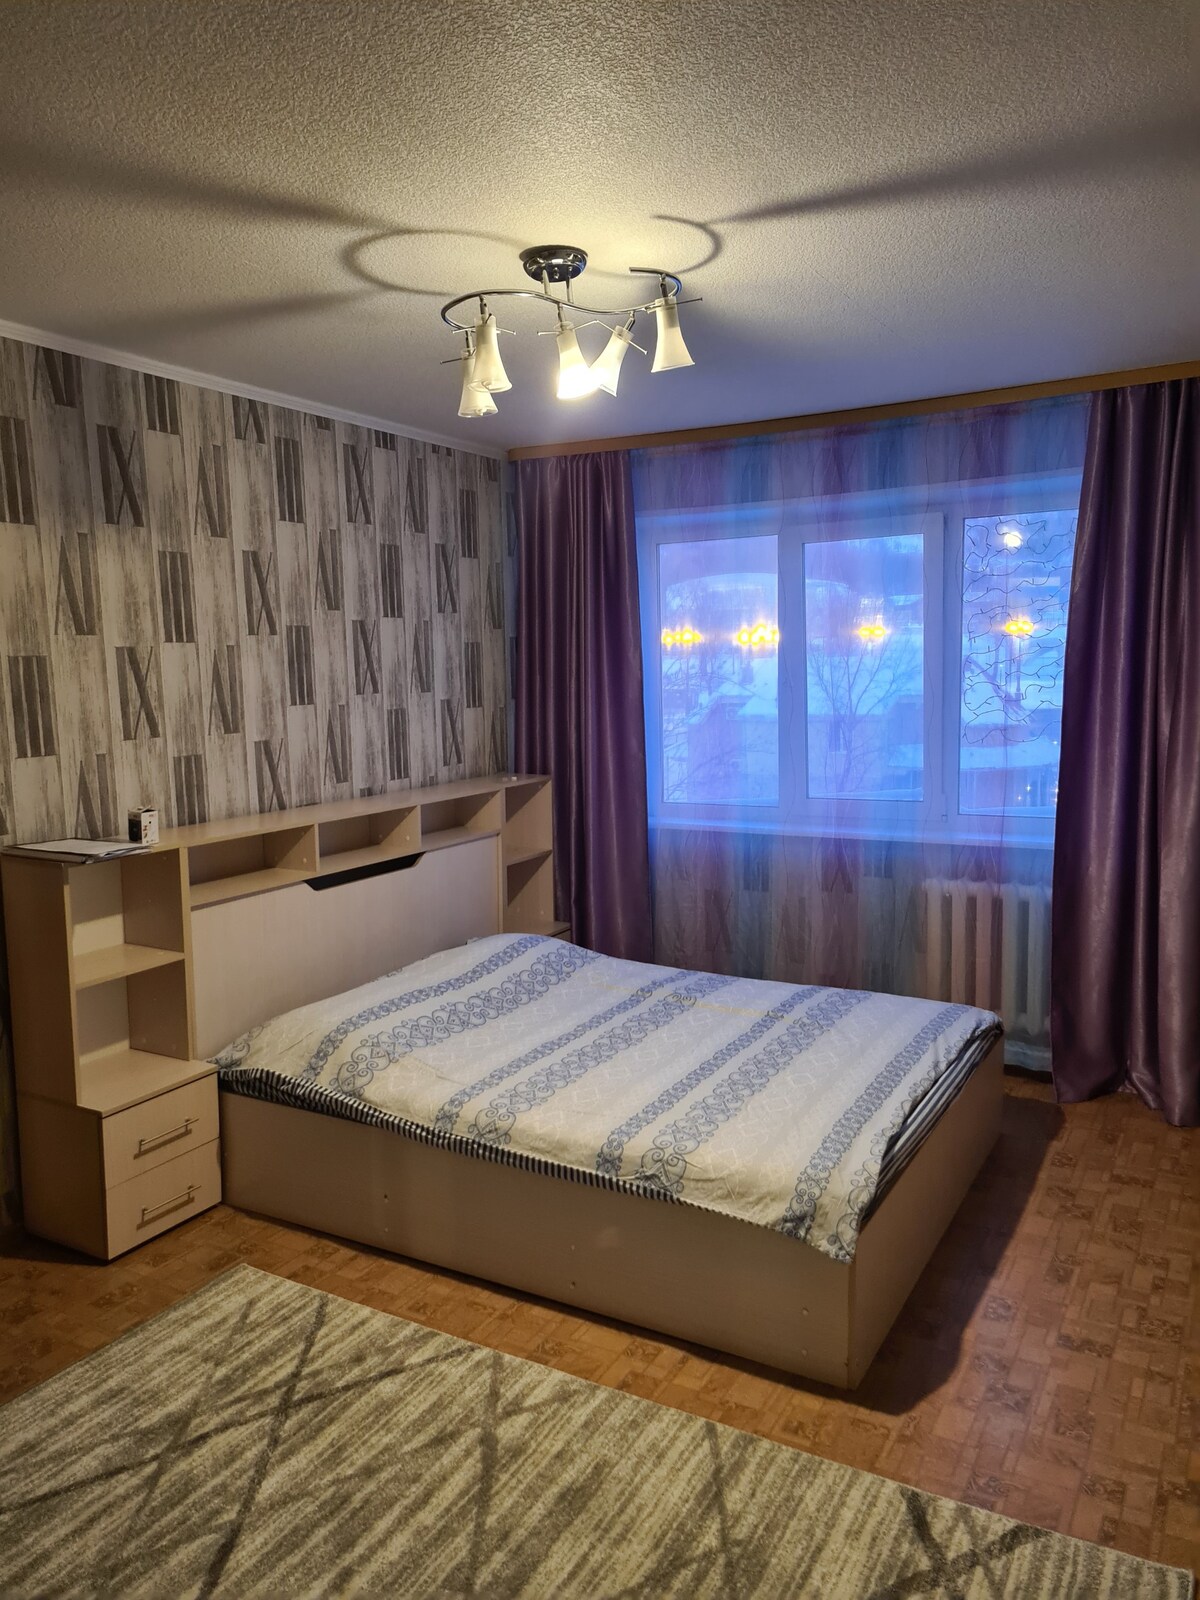 отличная квартира по доступной цеге в г. Южно-Сахалинске в непосредственной близости от горнолыжного курорта "Горный Воздух"